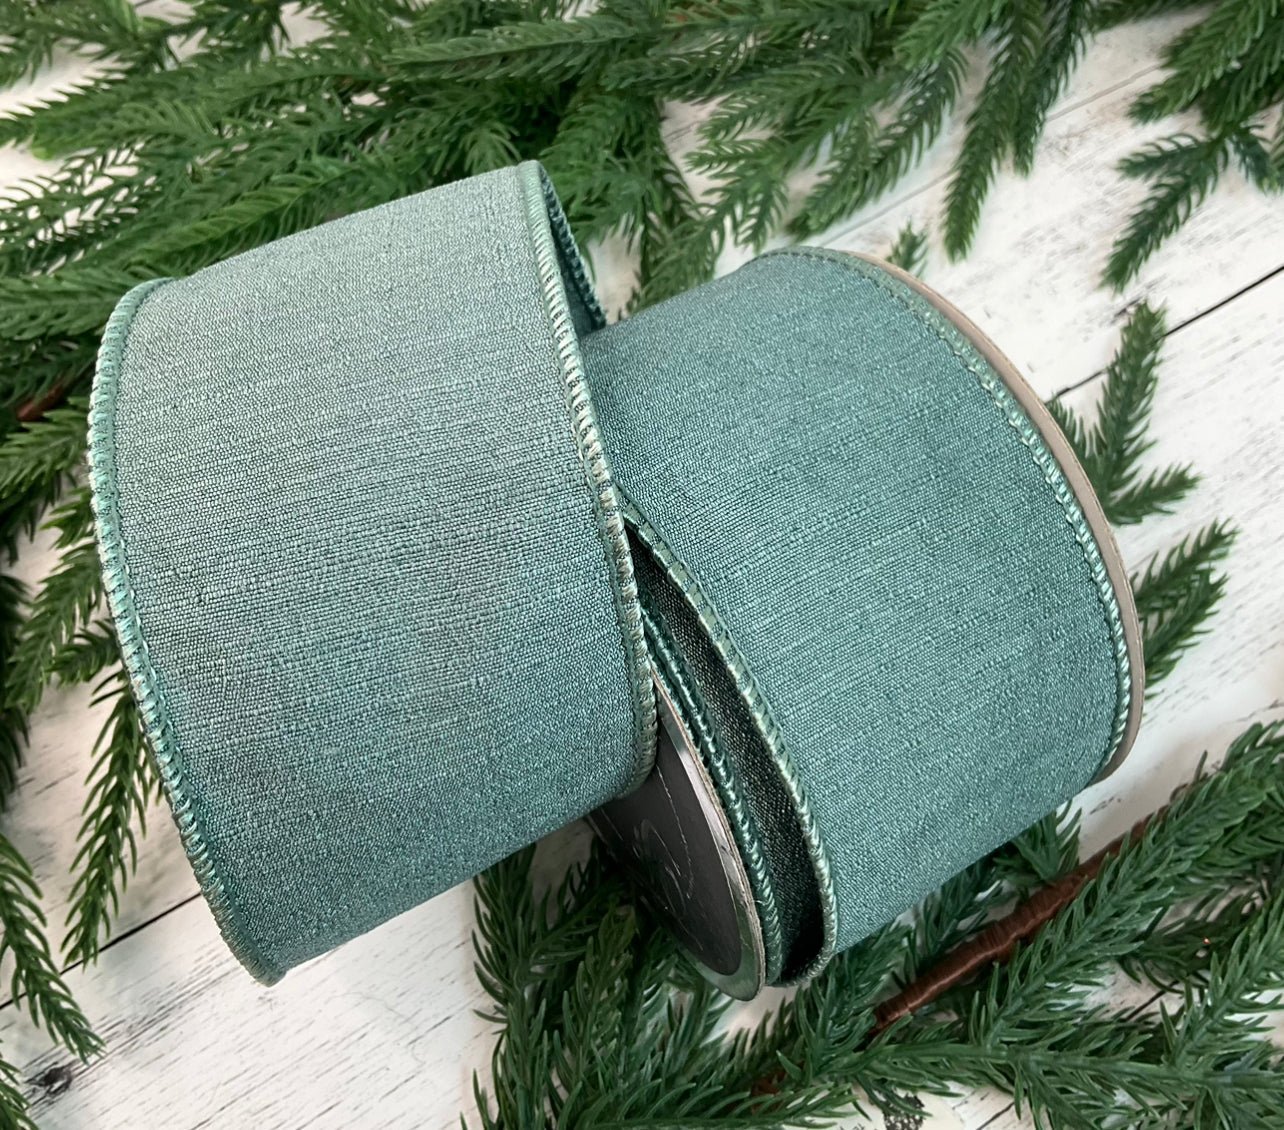 Emerald green plush velvet luster .75” farrisilk wired ribbon